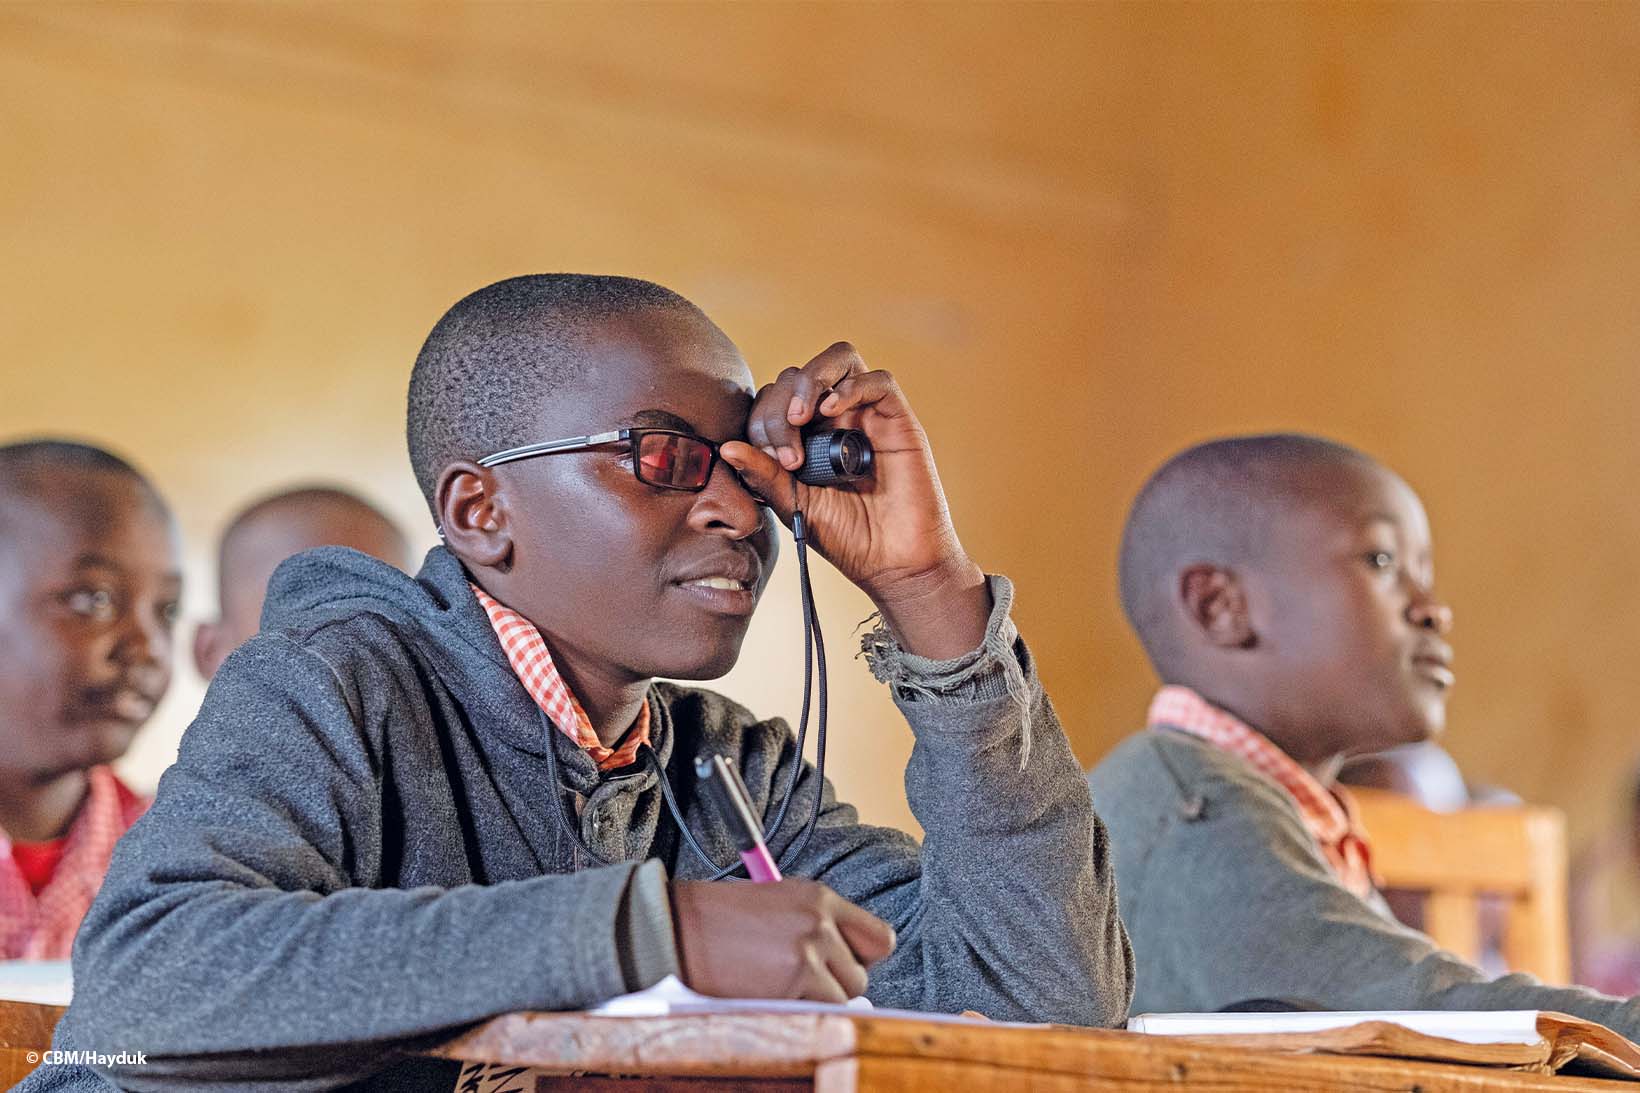 Un ragazzo keniano con occhiali con filtro anti UV guarda sorridente la lavagna attraverso un telescopio, mentre prende appunti. Indossa un’uniforme scolastica.